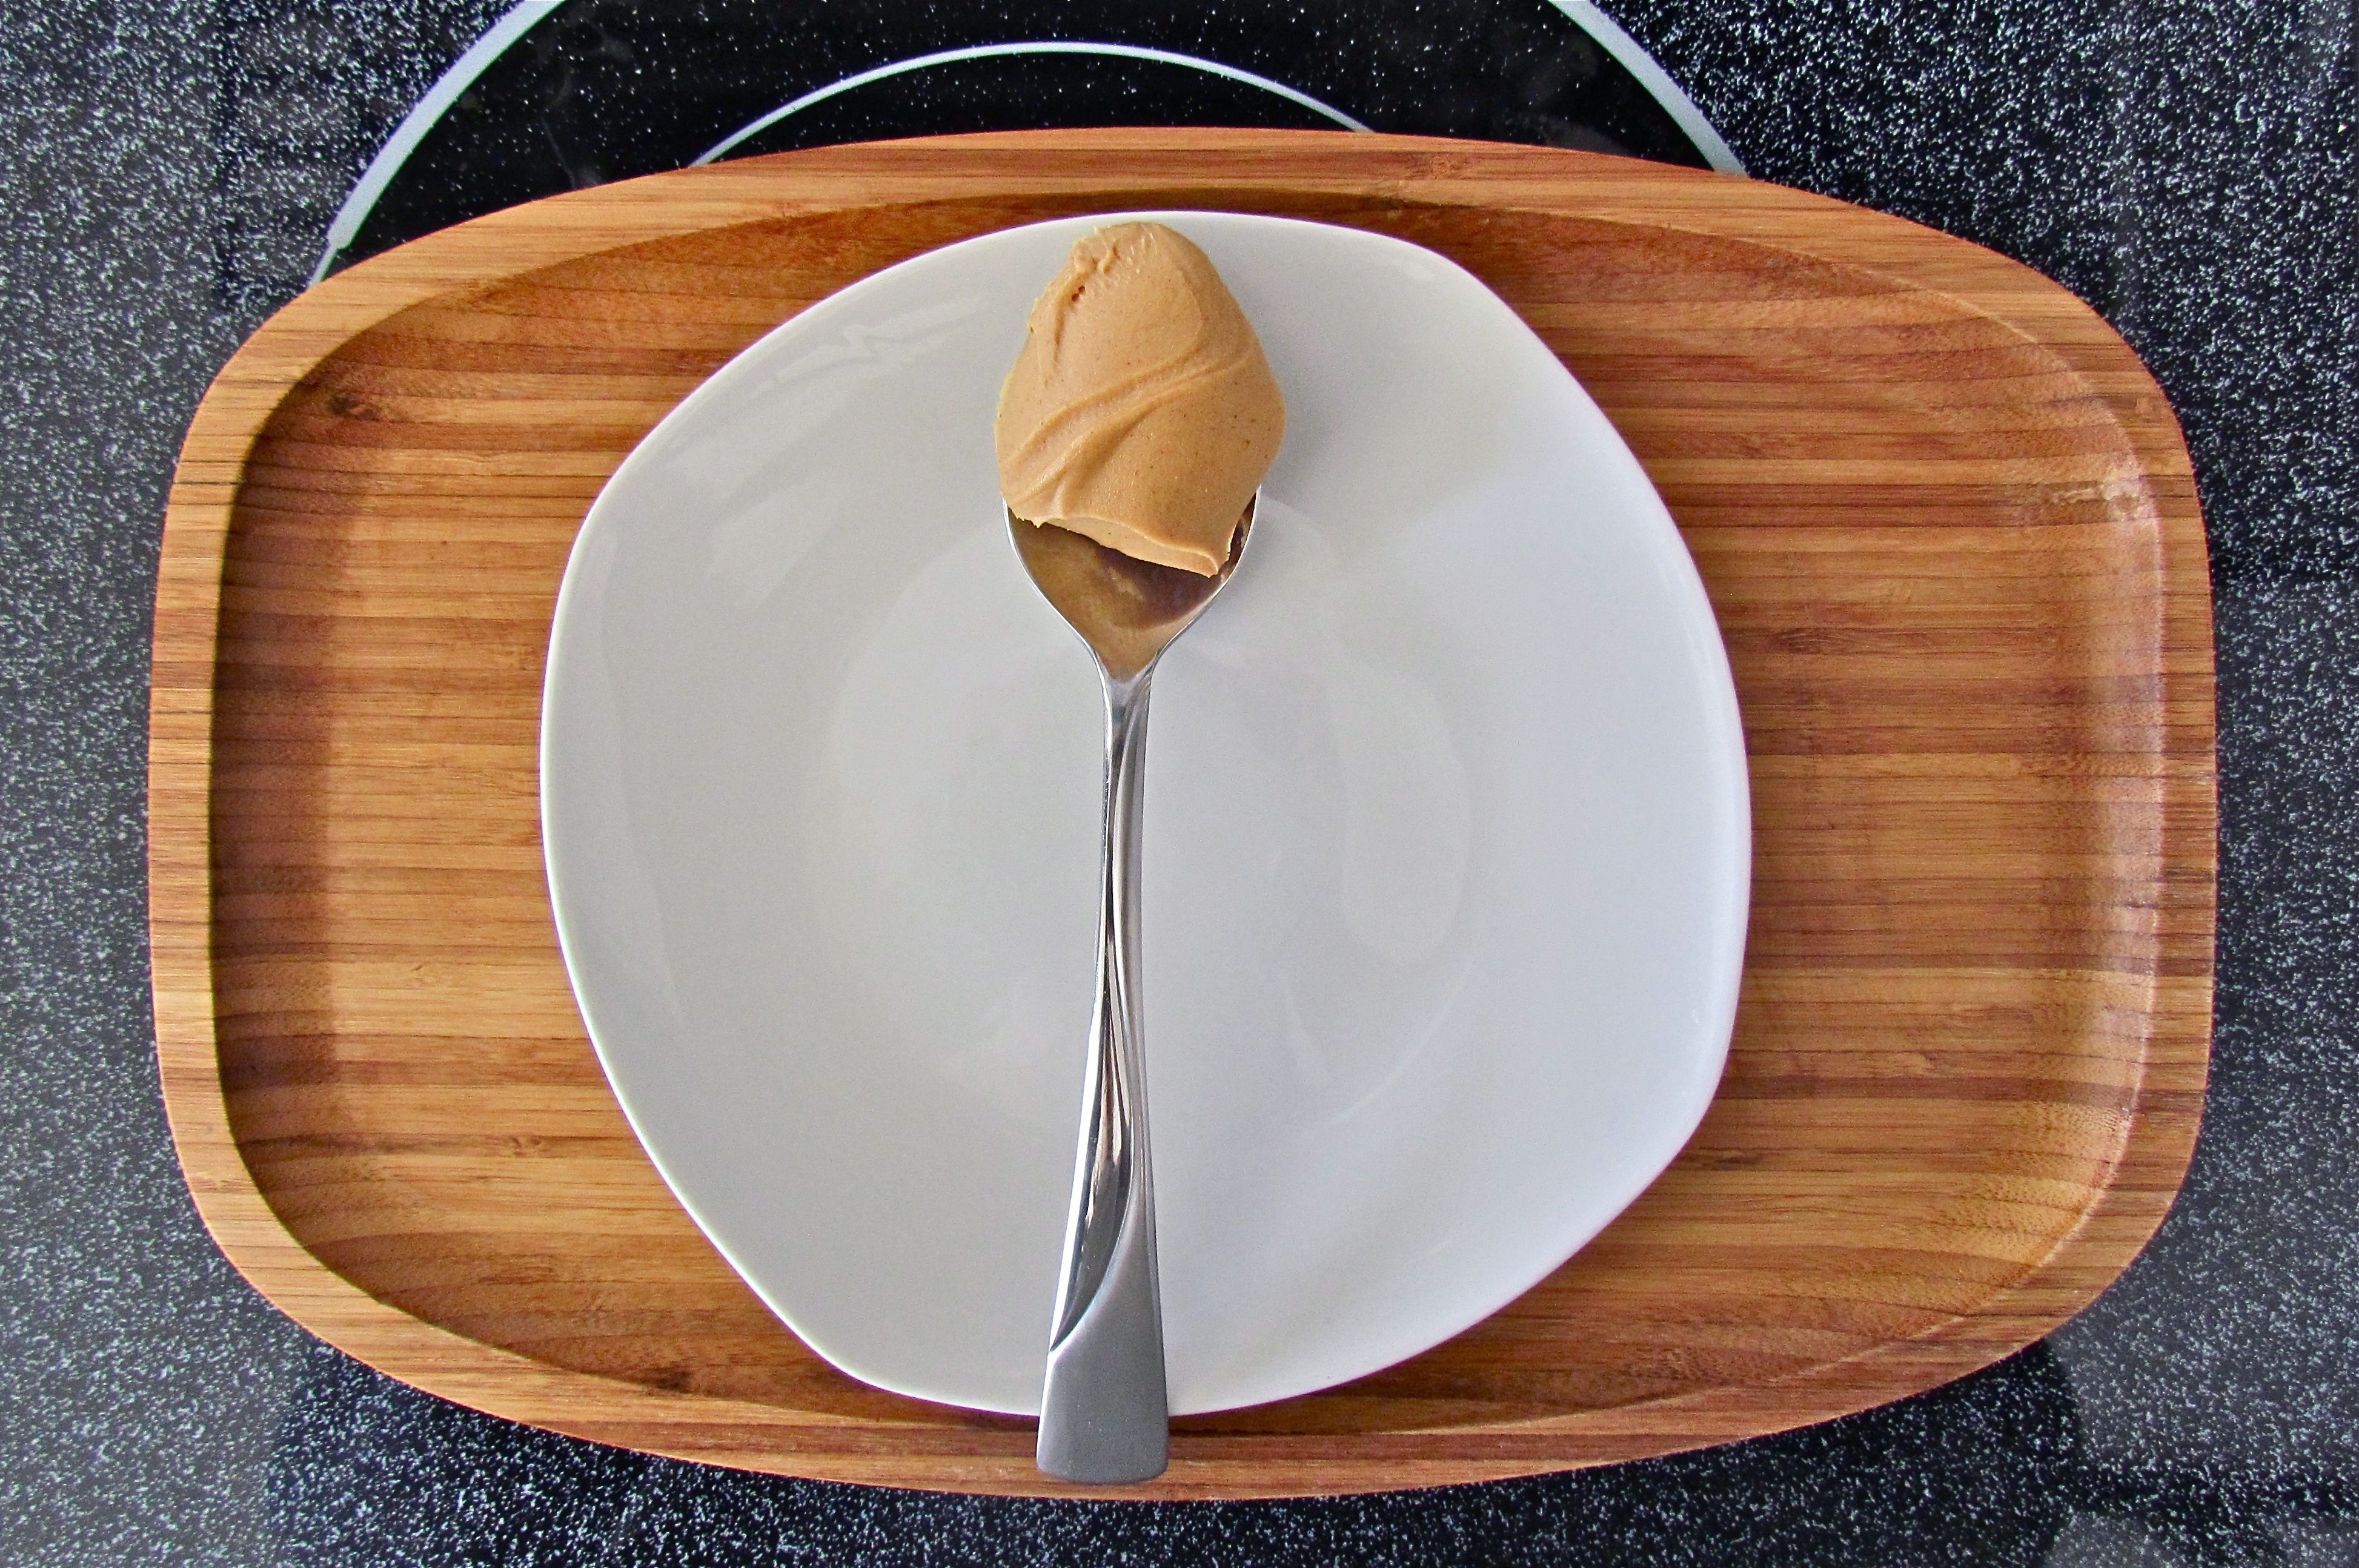 peanut-butter-spoon-flickr